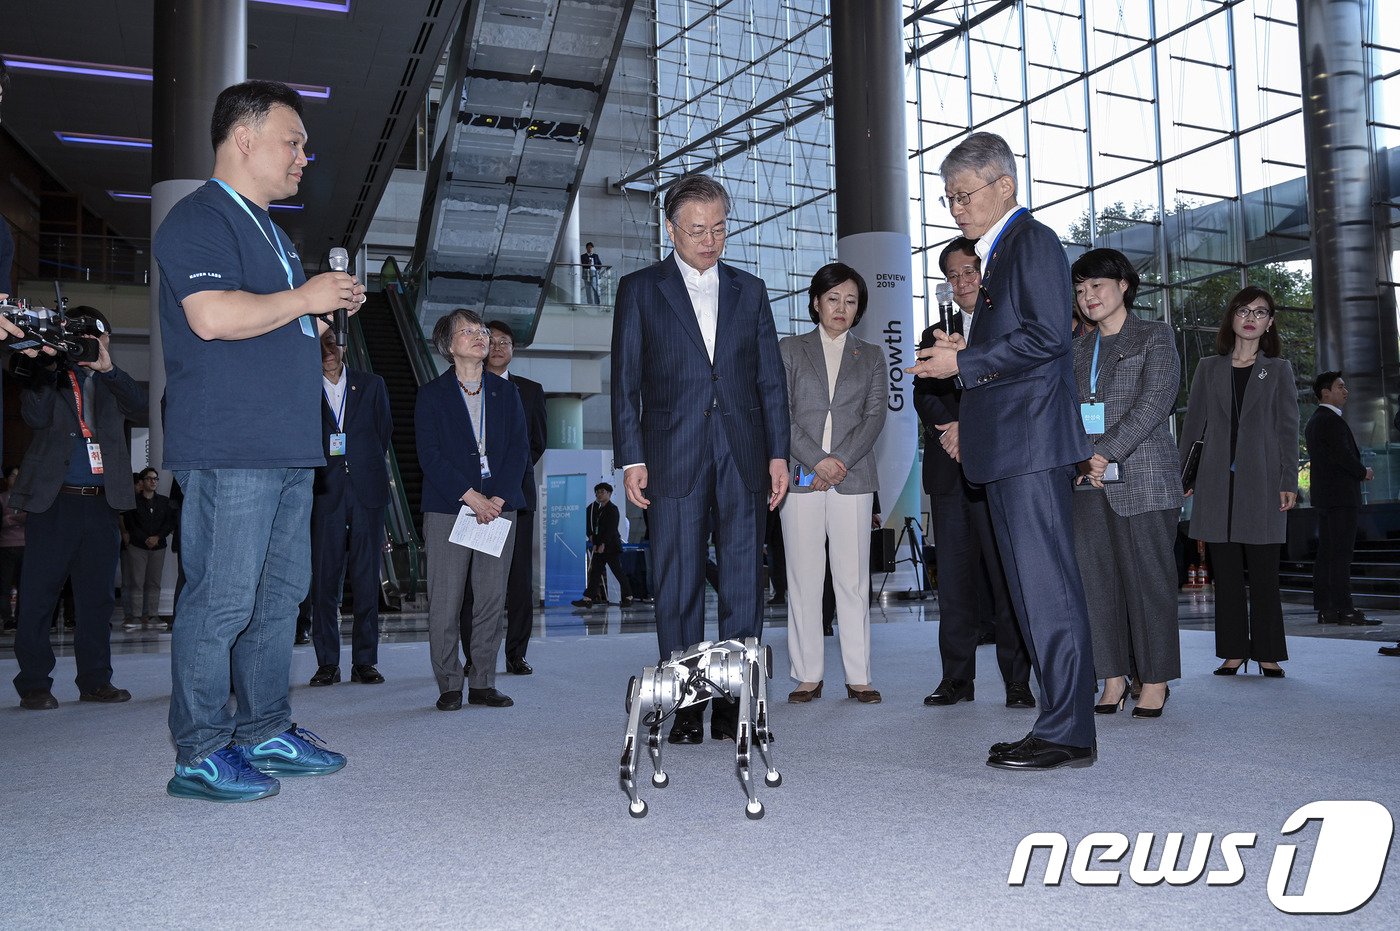 문재인 대통령이 28일 서울 삼성동 코엑스에서 열린 &#39;네이버 데뷰 2019&#39; 행사에서 &#39;미니 치타&#39; 로봇 시연을 살펴보고 있다.&#40;네이버 제공&#41;ⓒ 뉴스1